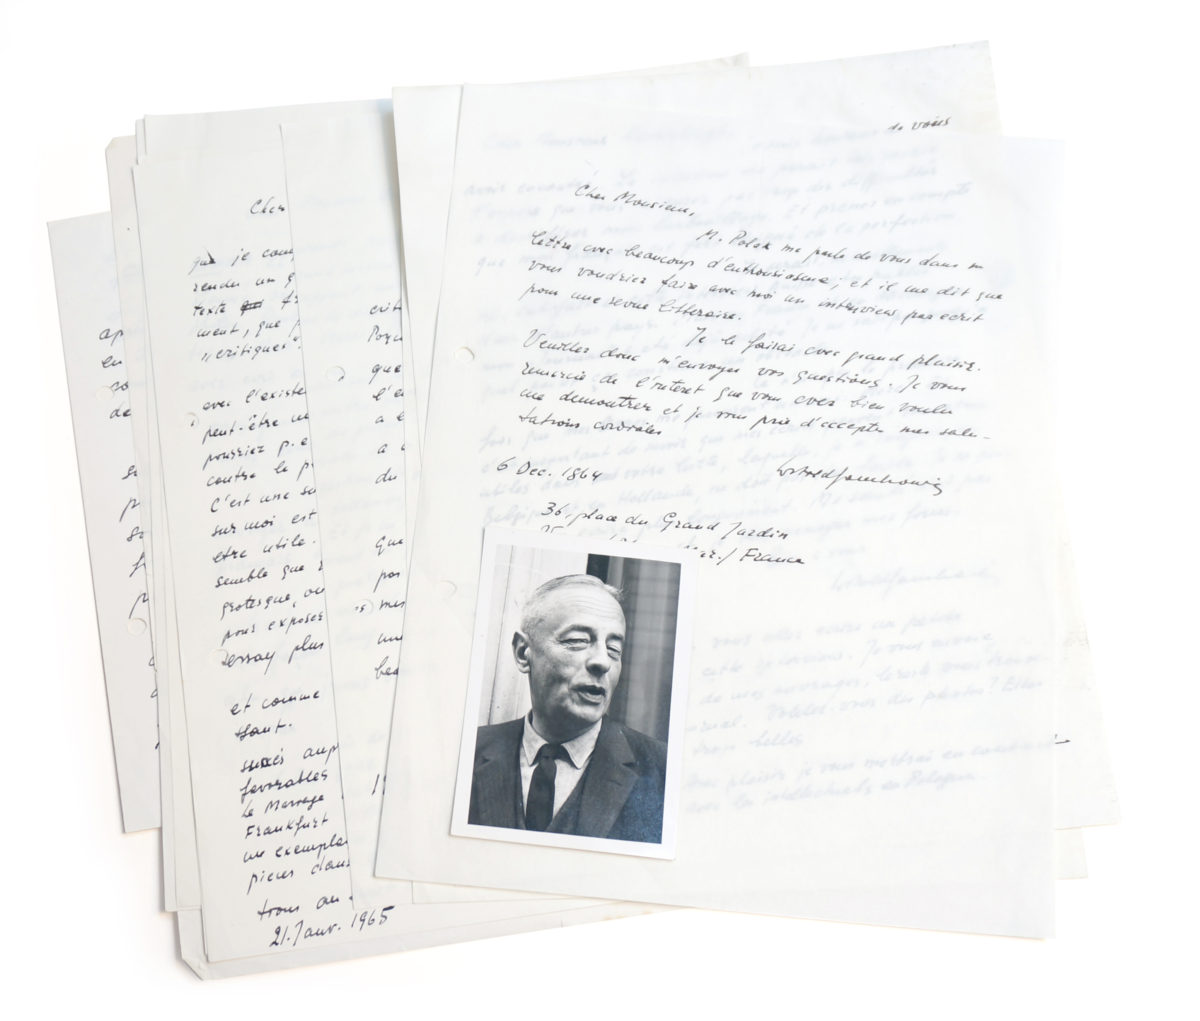 Demian-antiquariaat-Witold Gombrowicz. Dix lettres en manuscrit original et un portrait photographique de l’auteur.